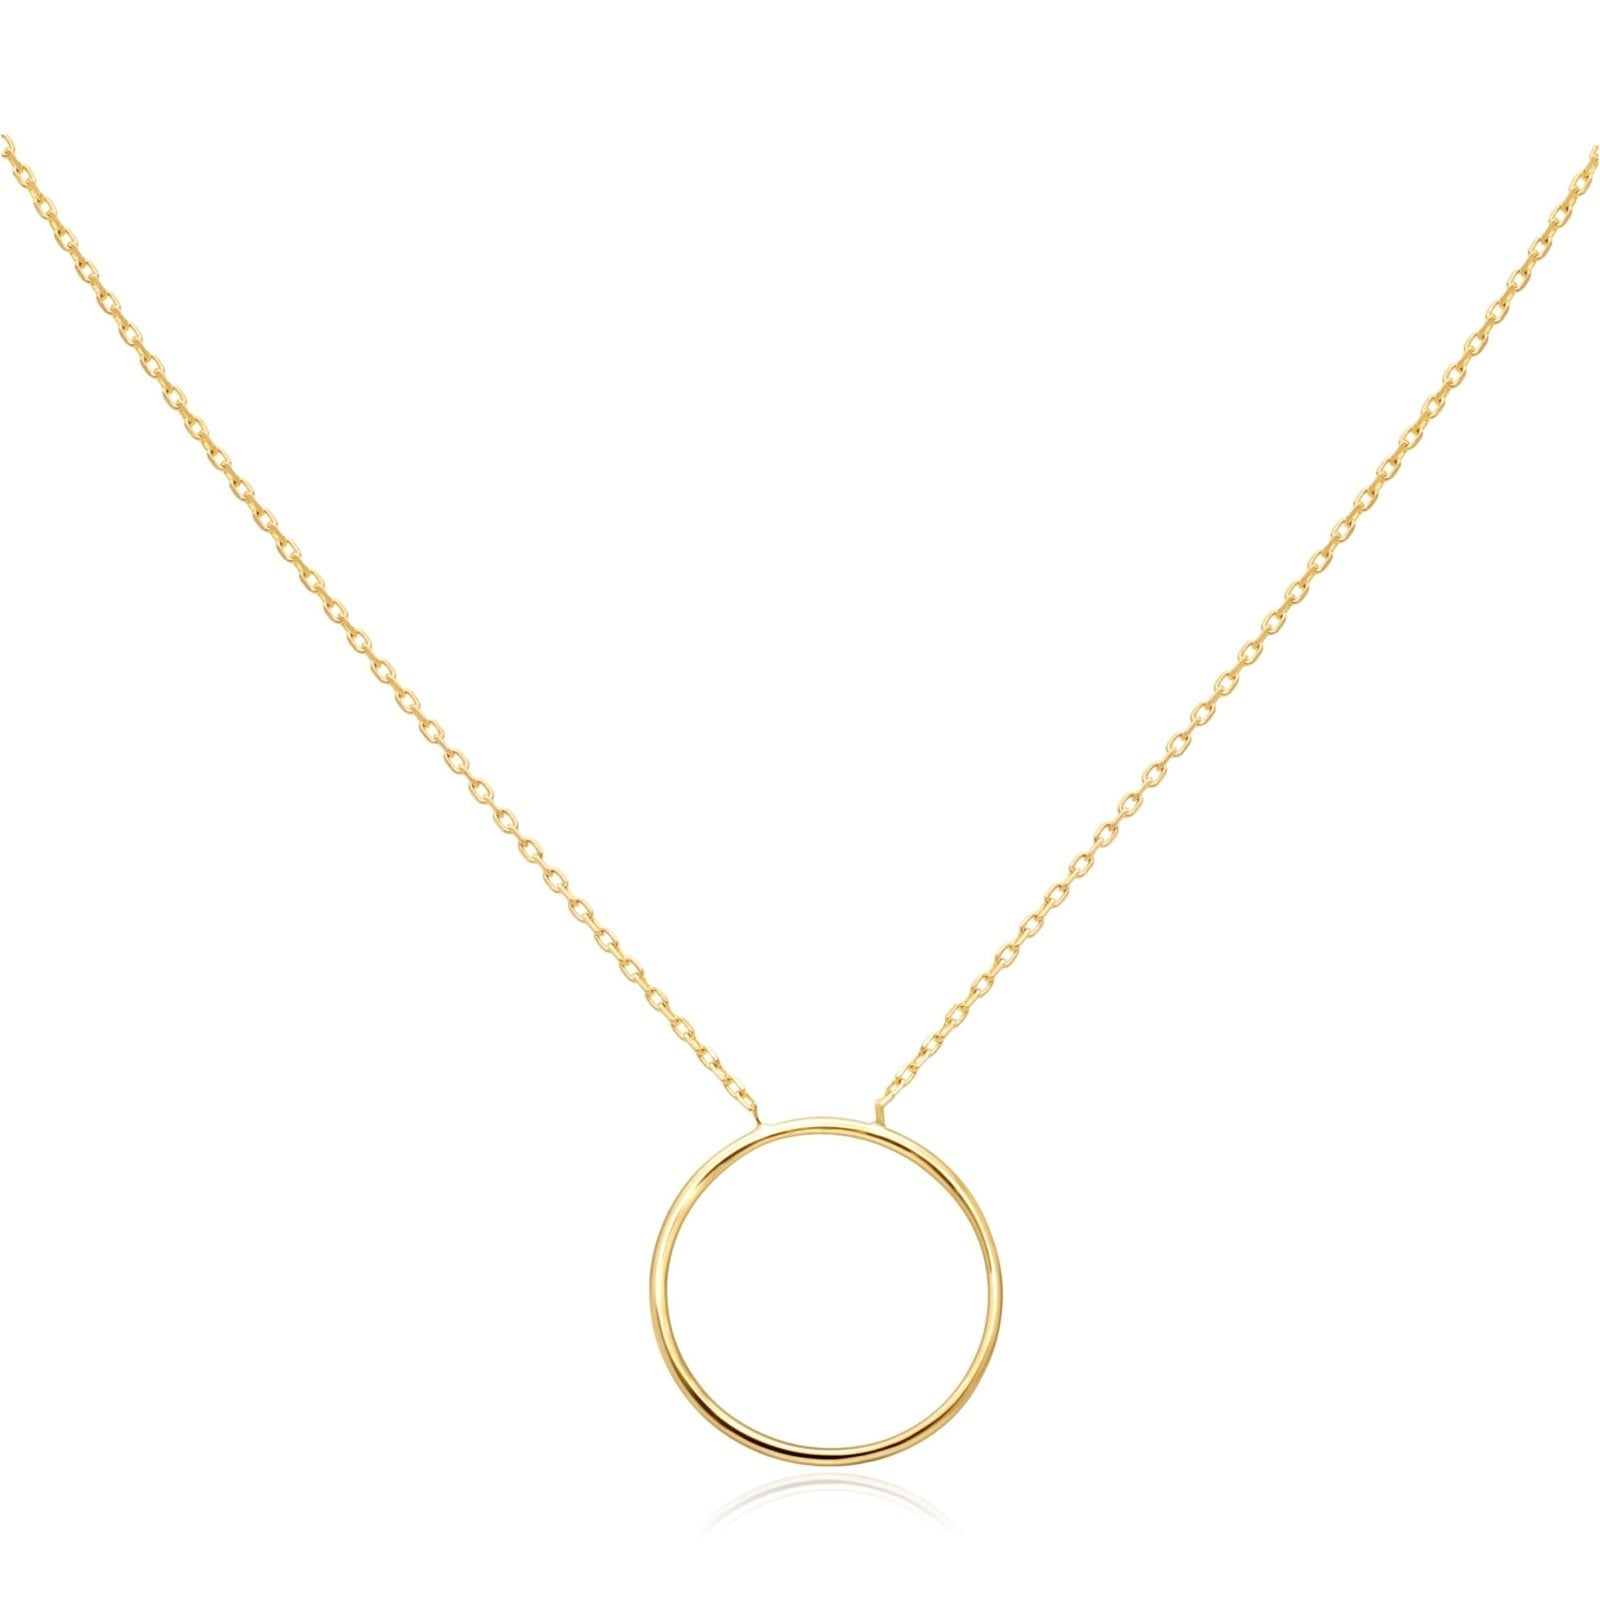 Circle Necklace Necklaces Estella Collection #product_description# 14k Make Collection Pendant Necklace #tag4# #tag5# #tag6# #tag7# #tag8# #tag9# #tag10#